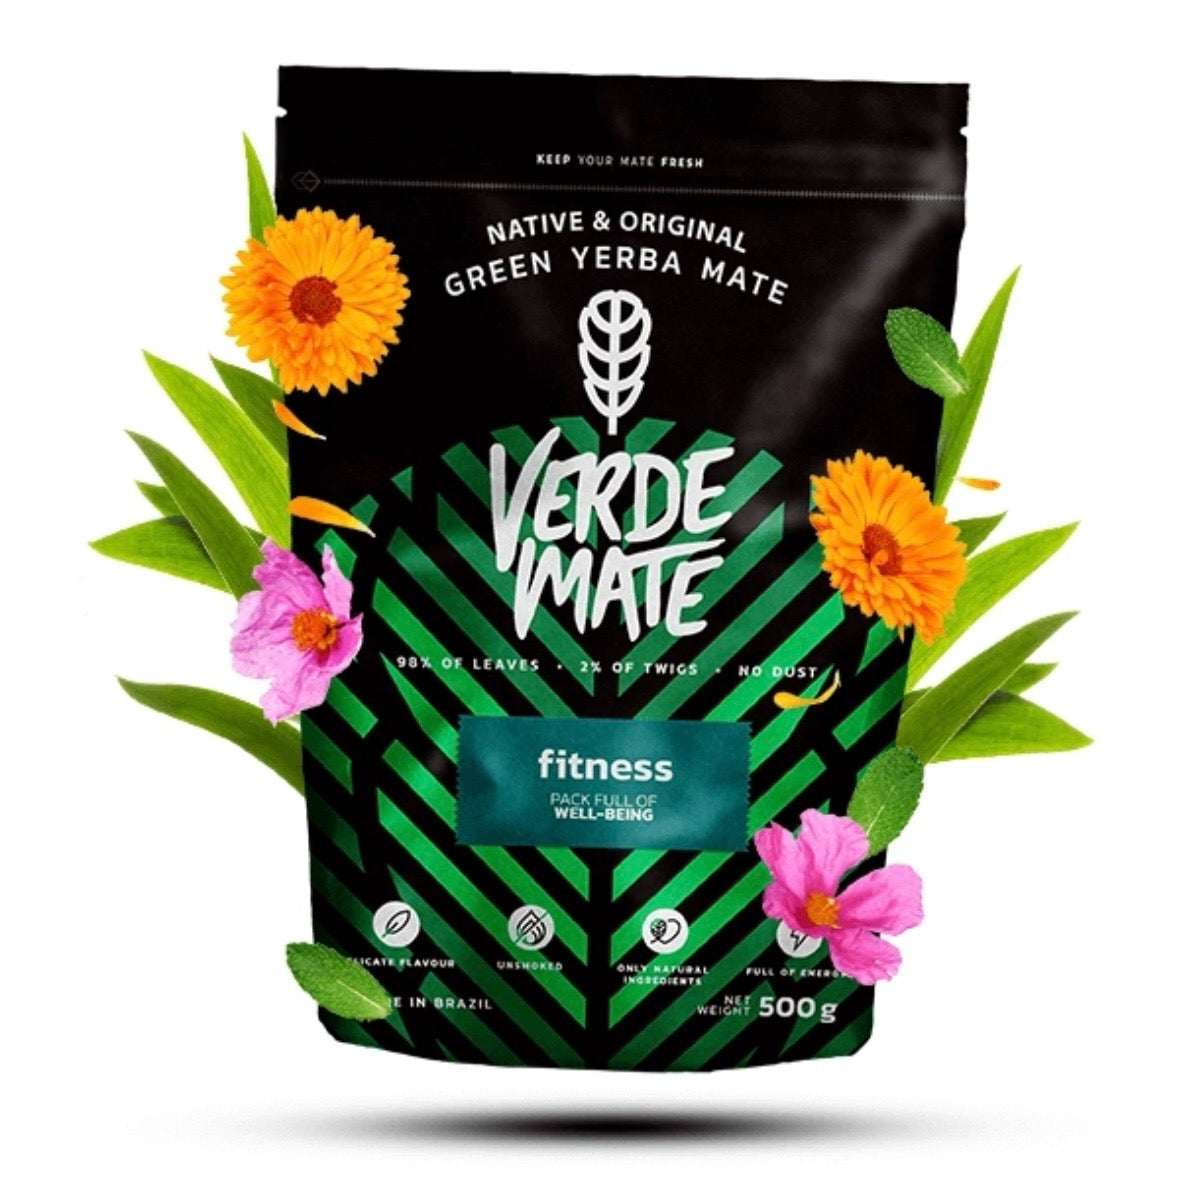 Verde Mate Fitness fiori ed erbe Pre allenamento - Yerba mate origine Brasile 500g